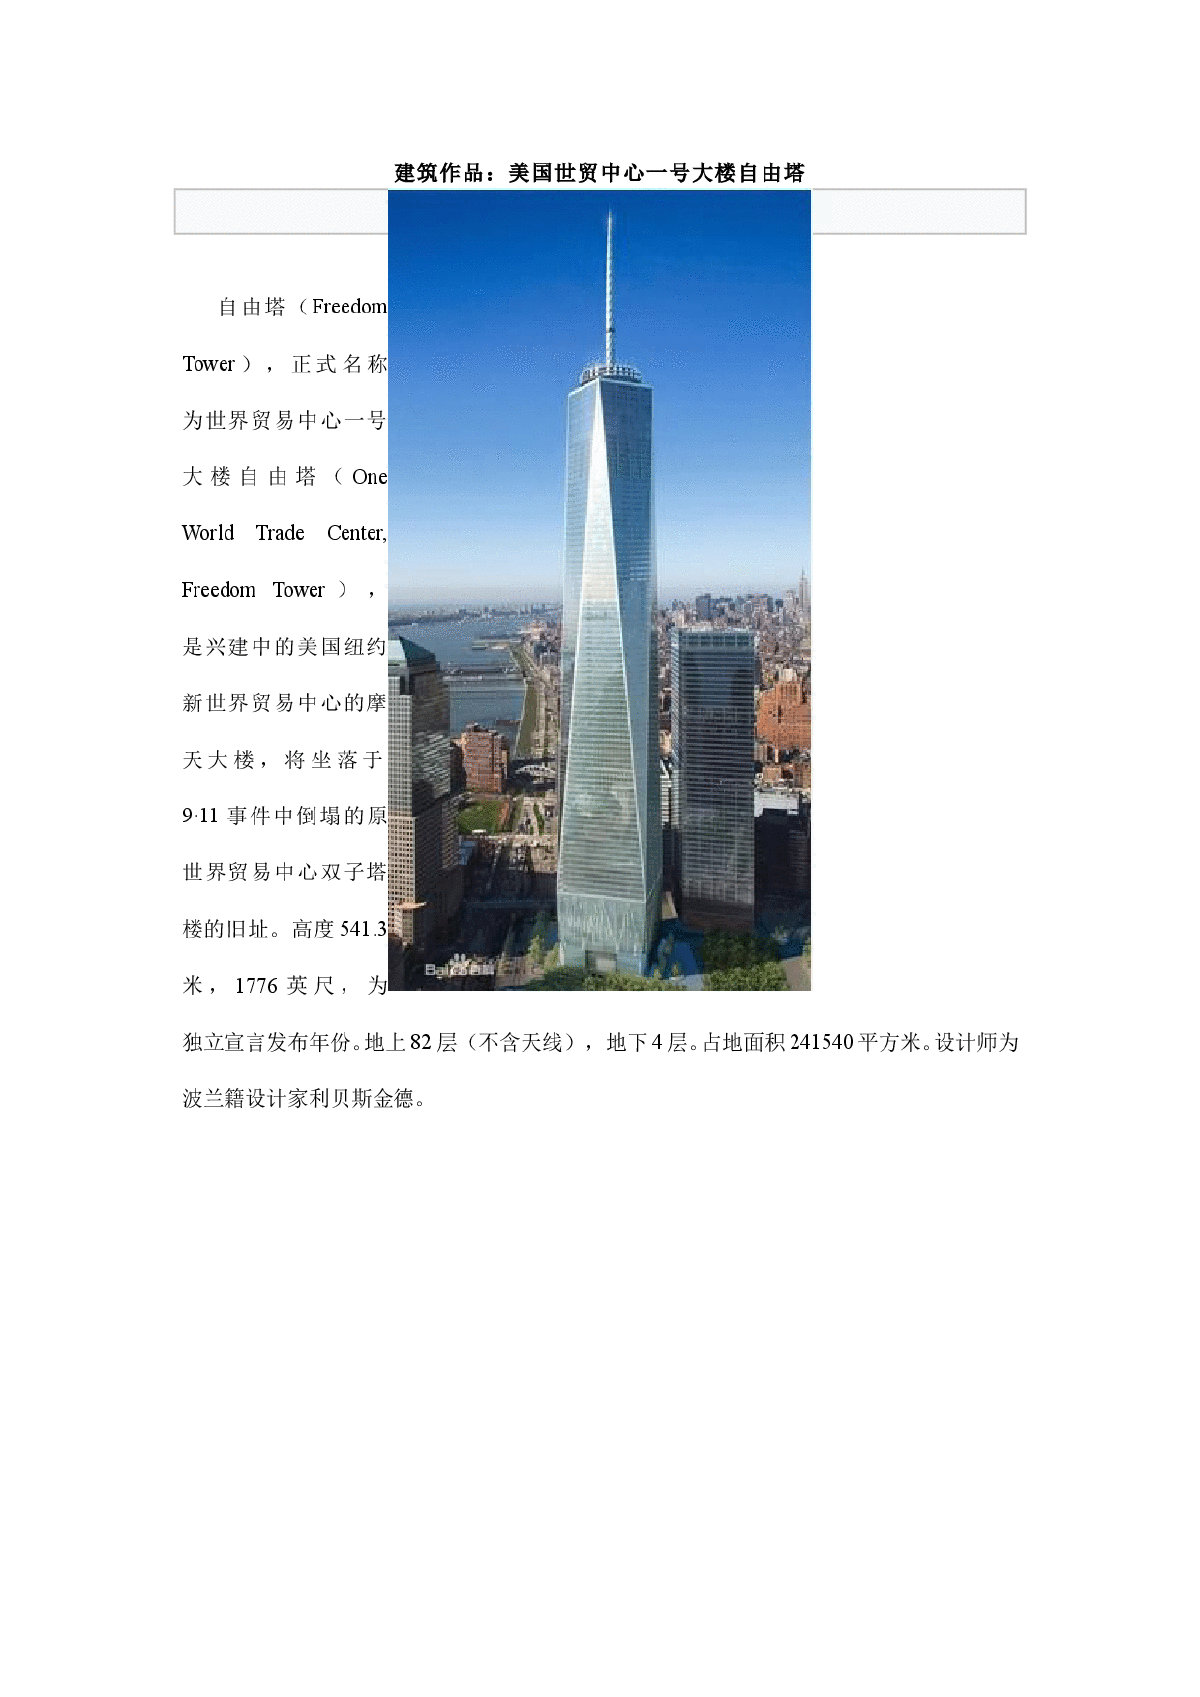 建筑作品赏析---美国世贸中心一号大楼自由塔-图一